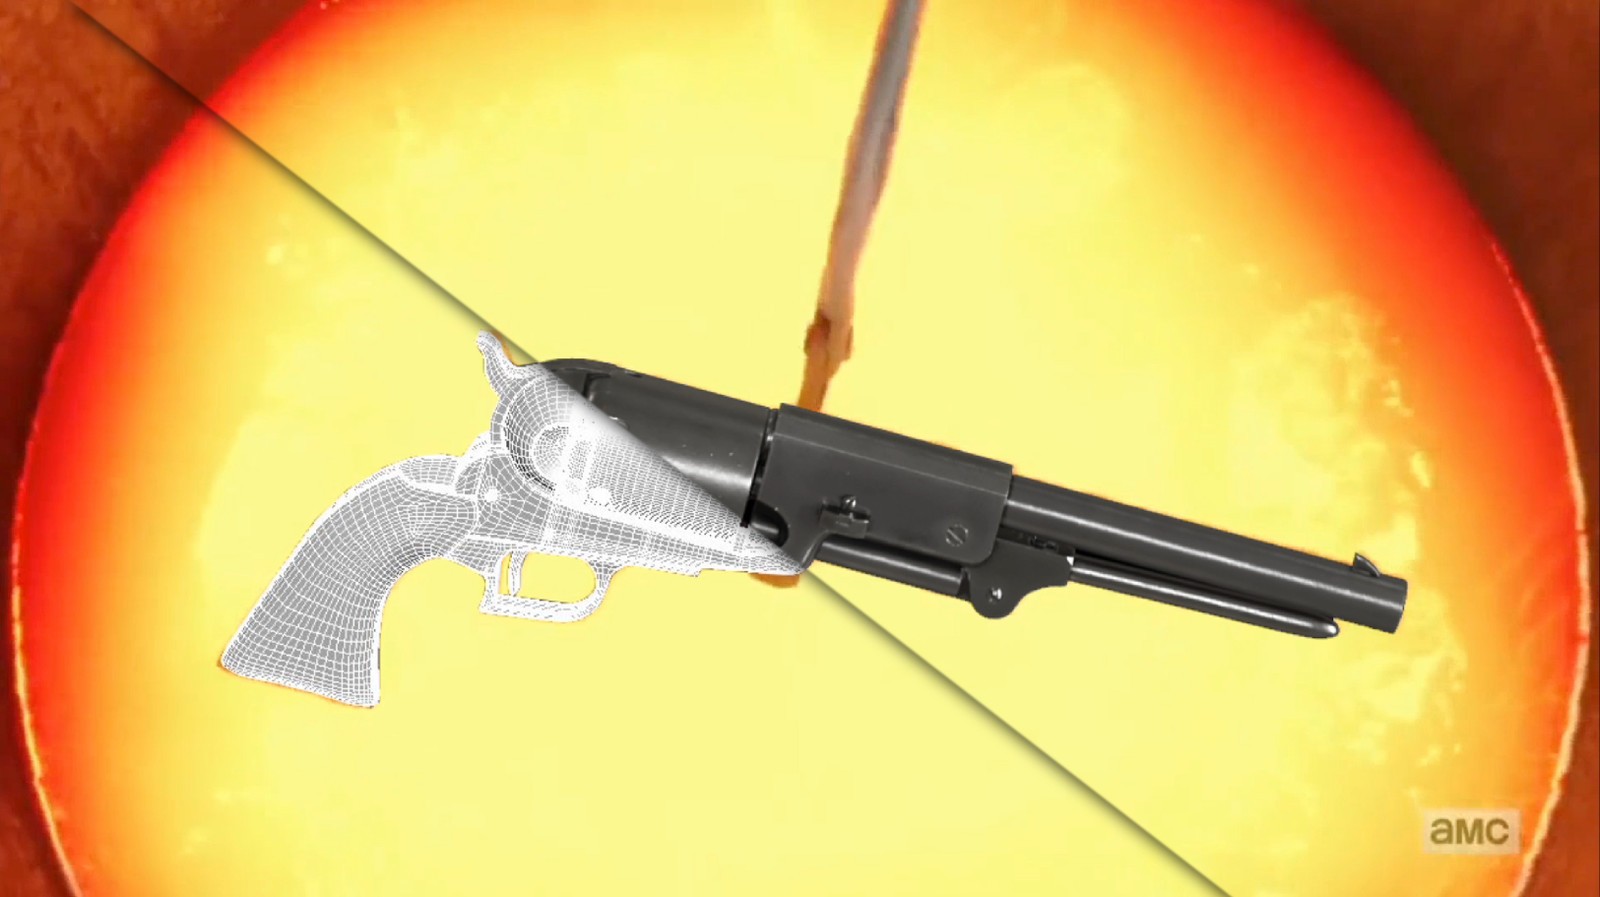 Colt revolver pistols, created for use in the molten metal scene.